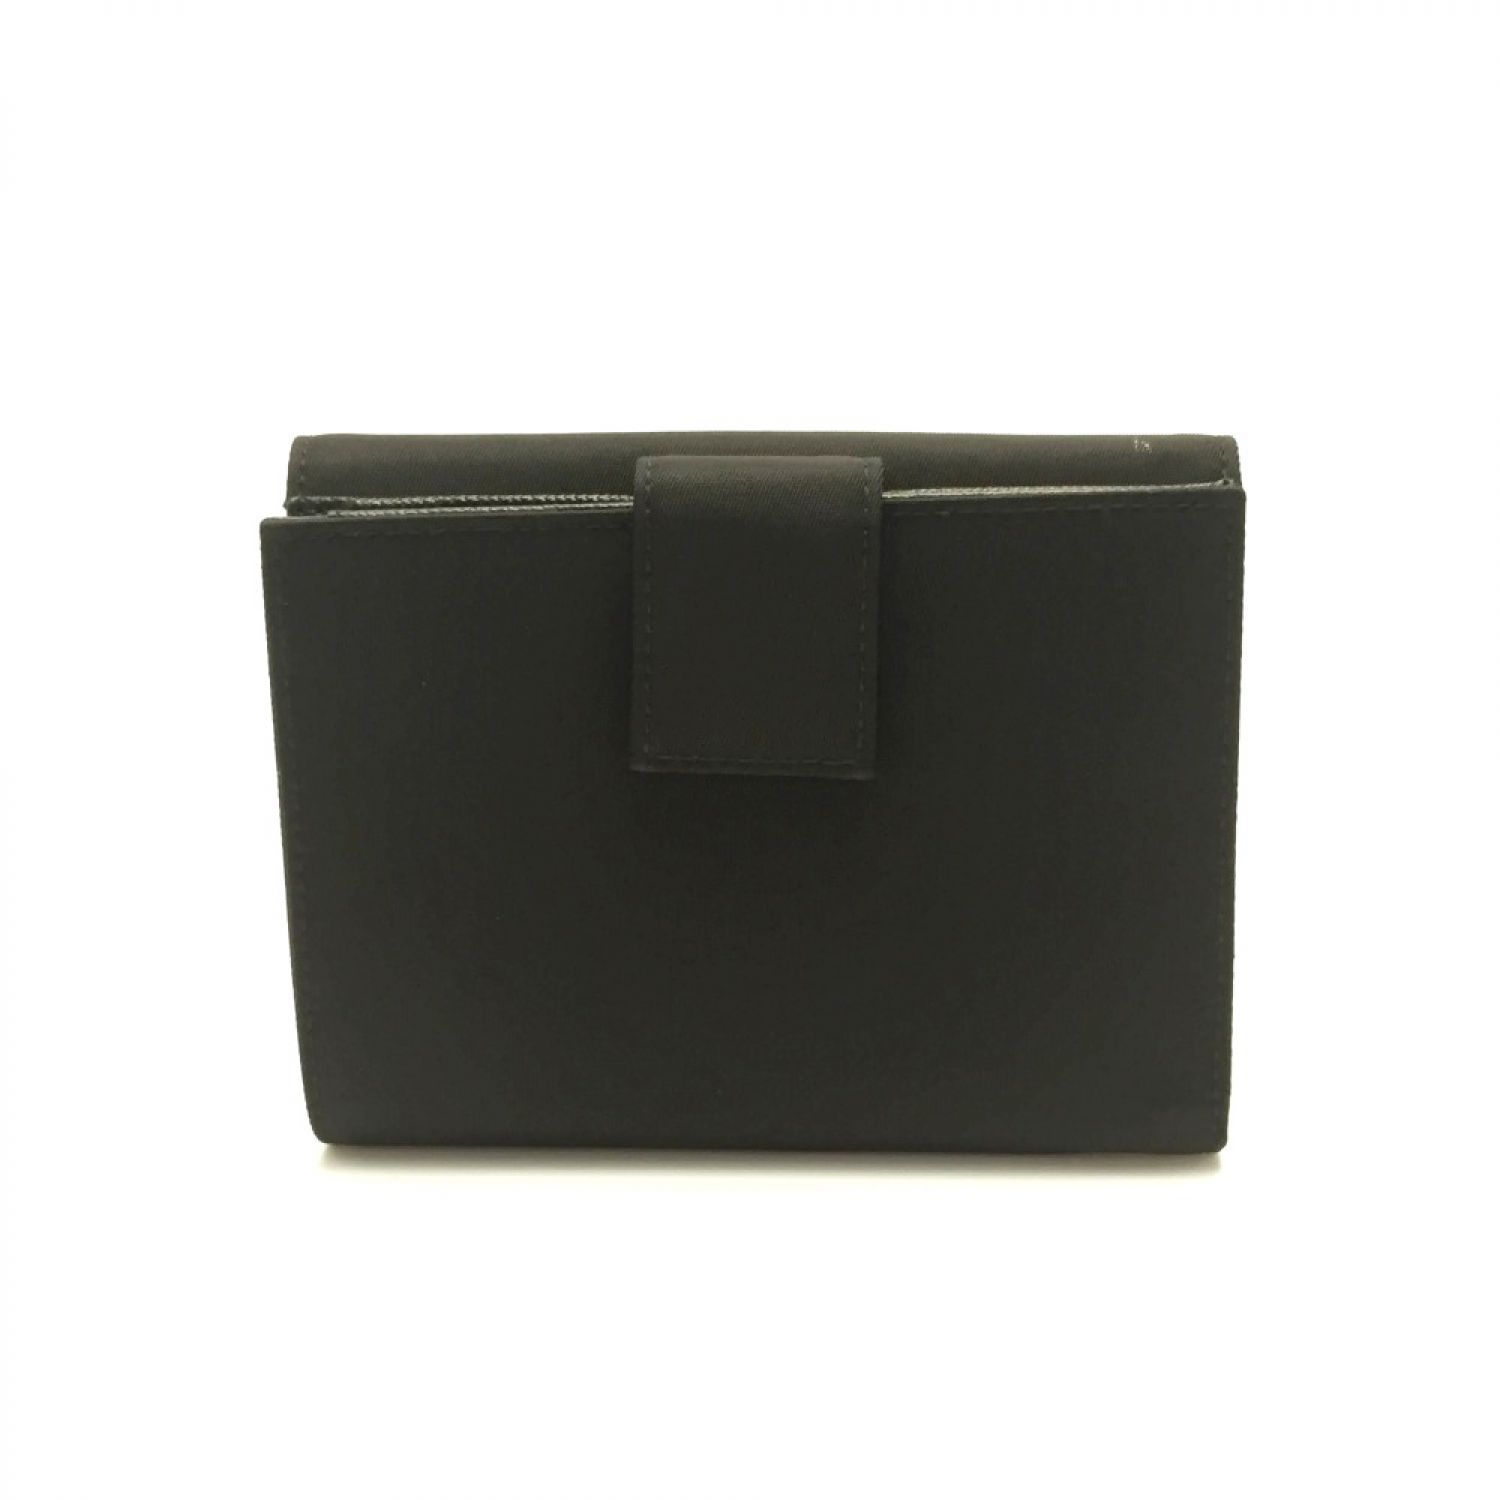 PRADA プラダ レザー フラップ カード・札入れ 二つ折り財布 ブラック